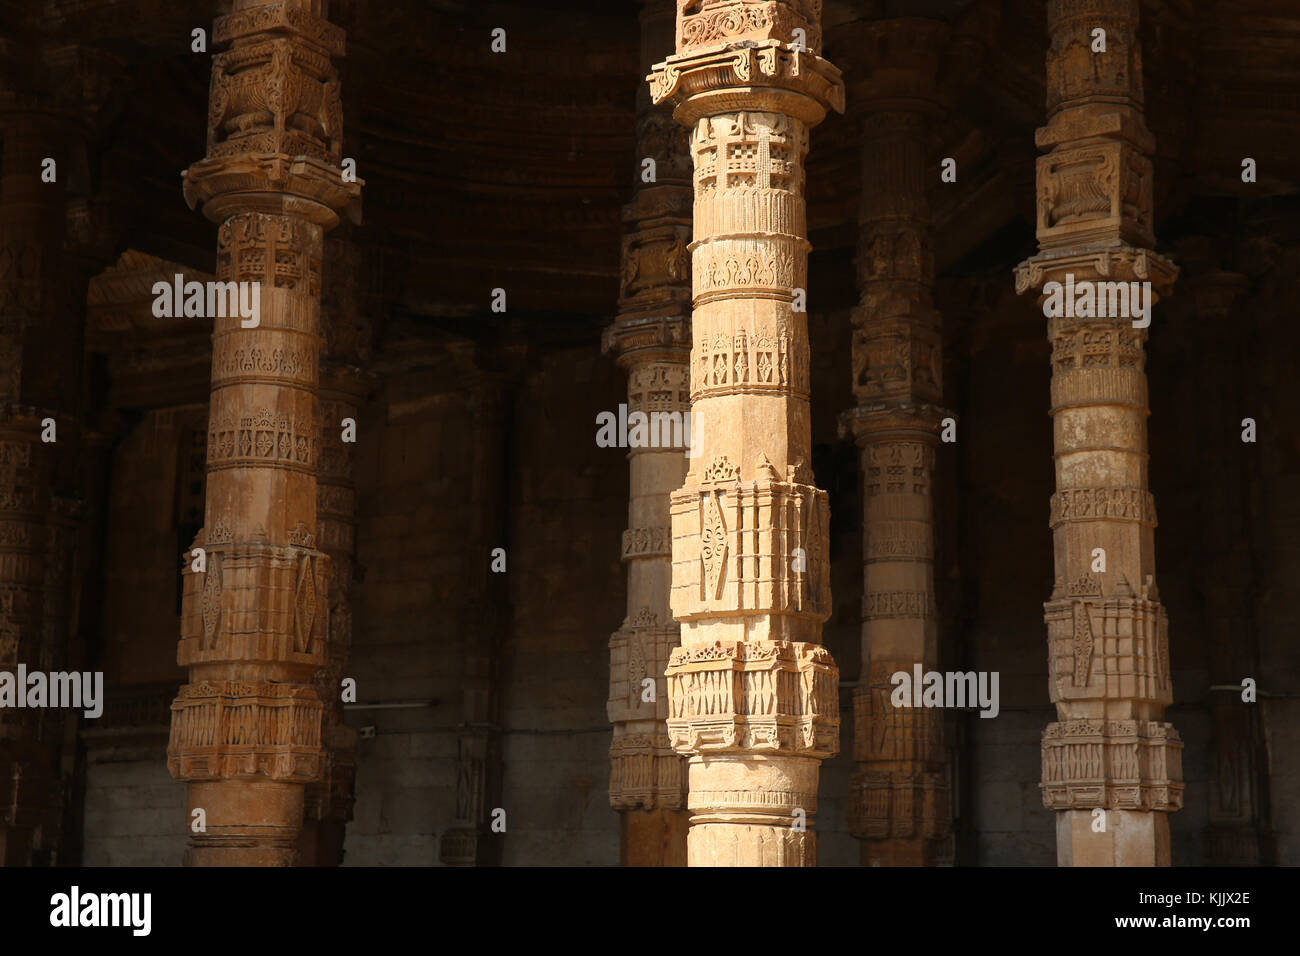 Piliers de de Adhai din ka jhonpra-mosquée (connu sous le nom de 2 1/2 journée remise relative à la légende qu'il a été construit en 2 jours et demi), Ajmer, Rajasthan. Ind Banque D'Images